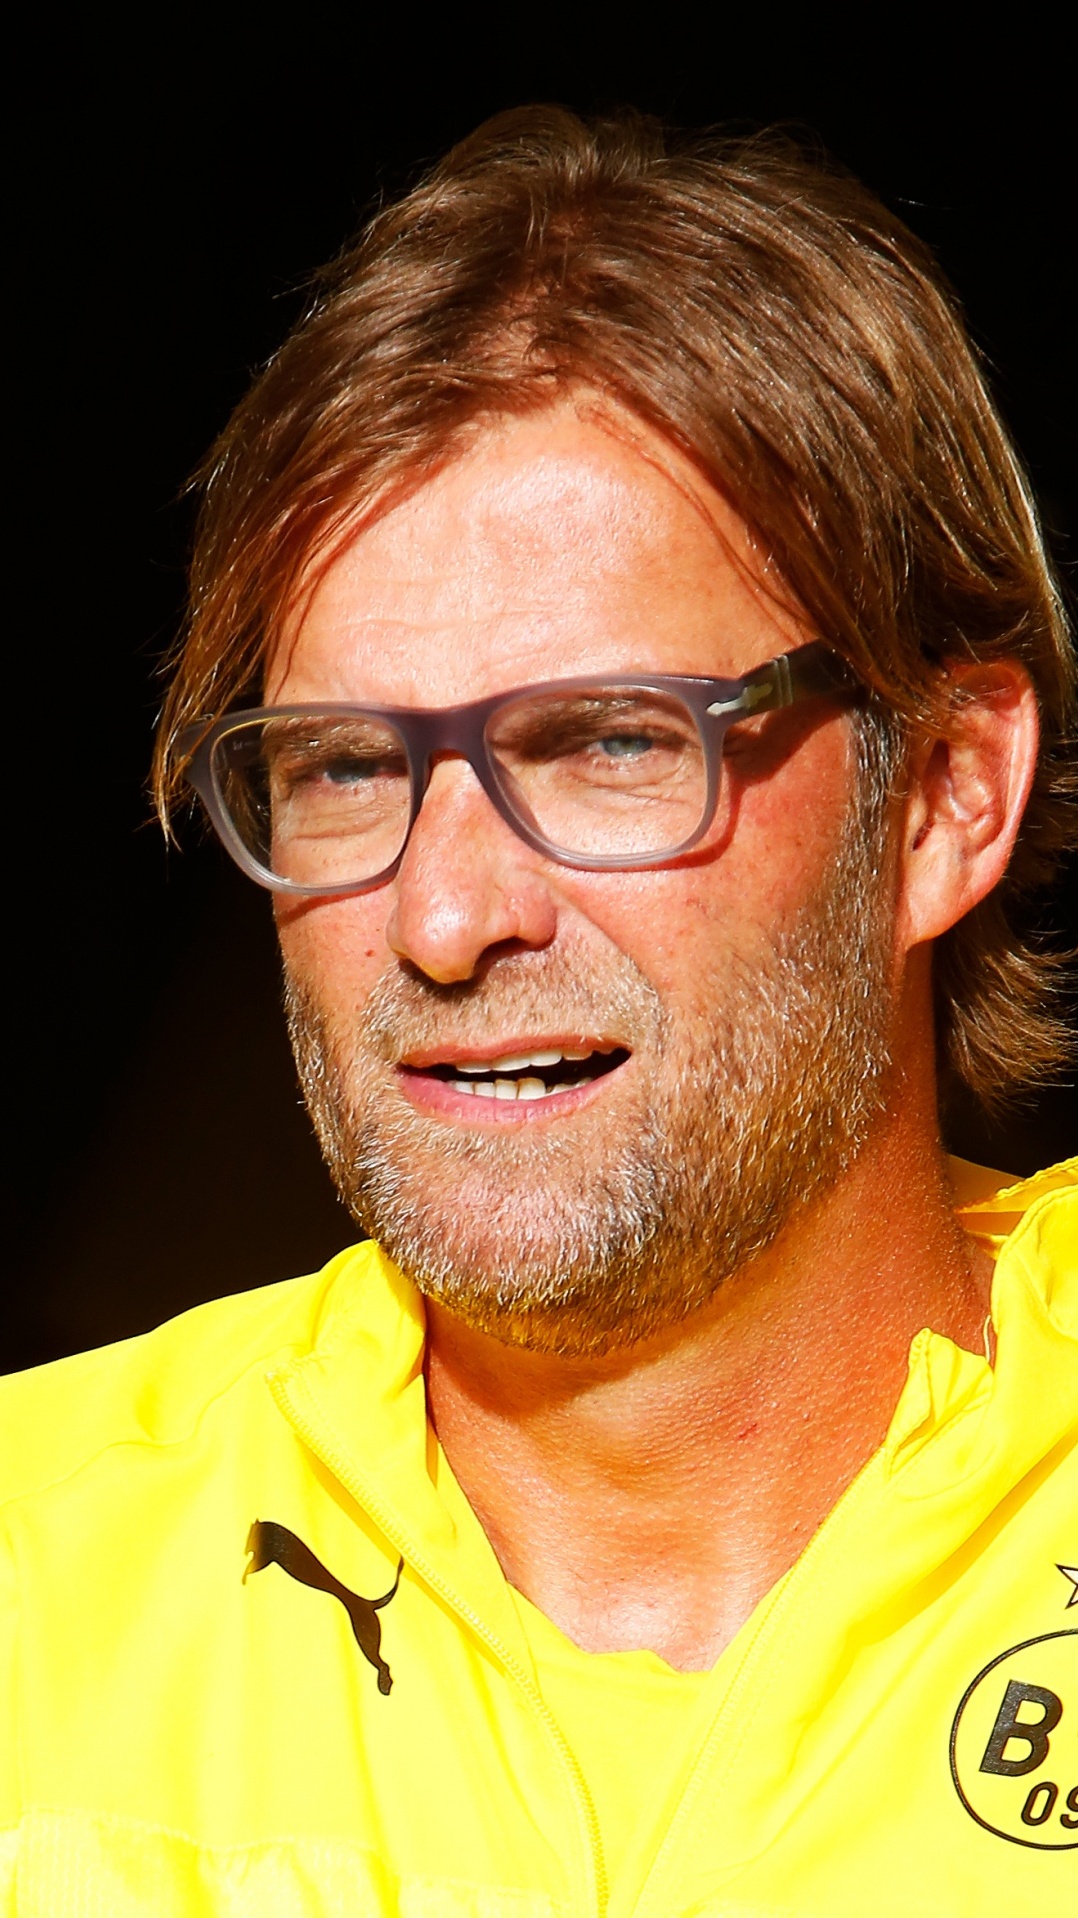 улыбка, ассоциация футбольный менеджер, желтый, очки, ливерпуль фк